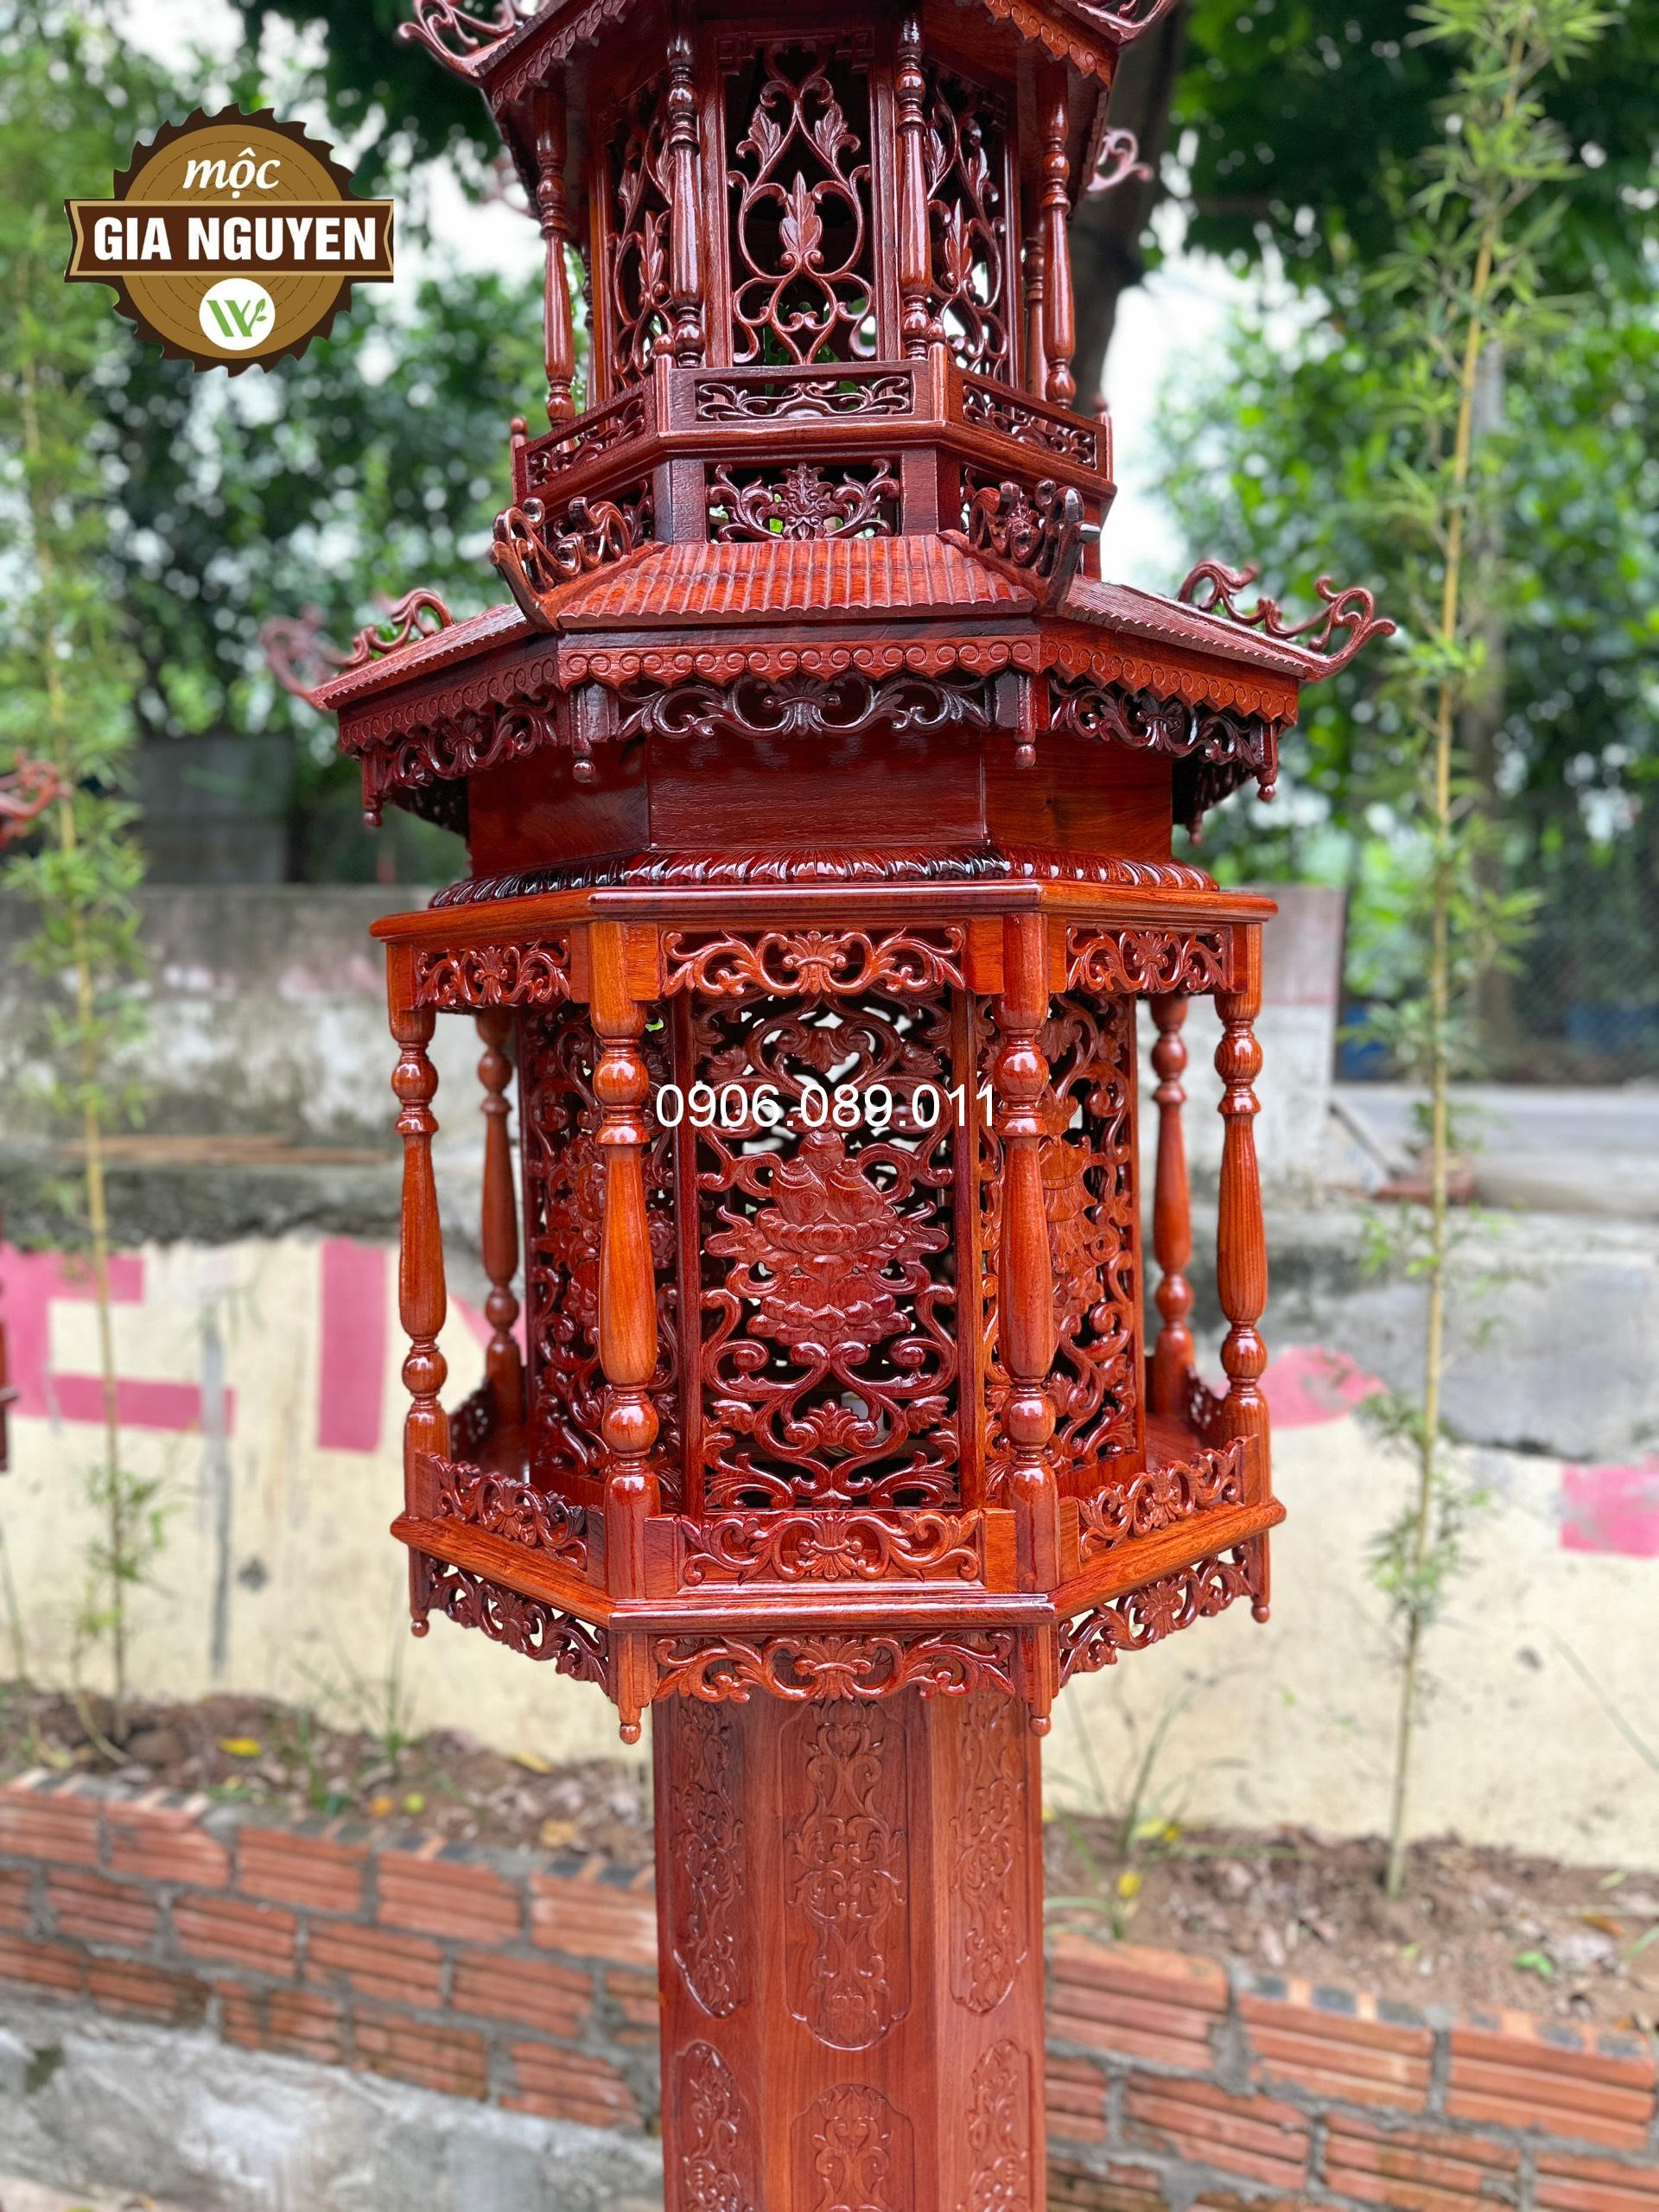 Đèn thờ gỗ hương- Đèn thờ 3 tầng gỗ hương cao cấp 2m8